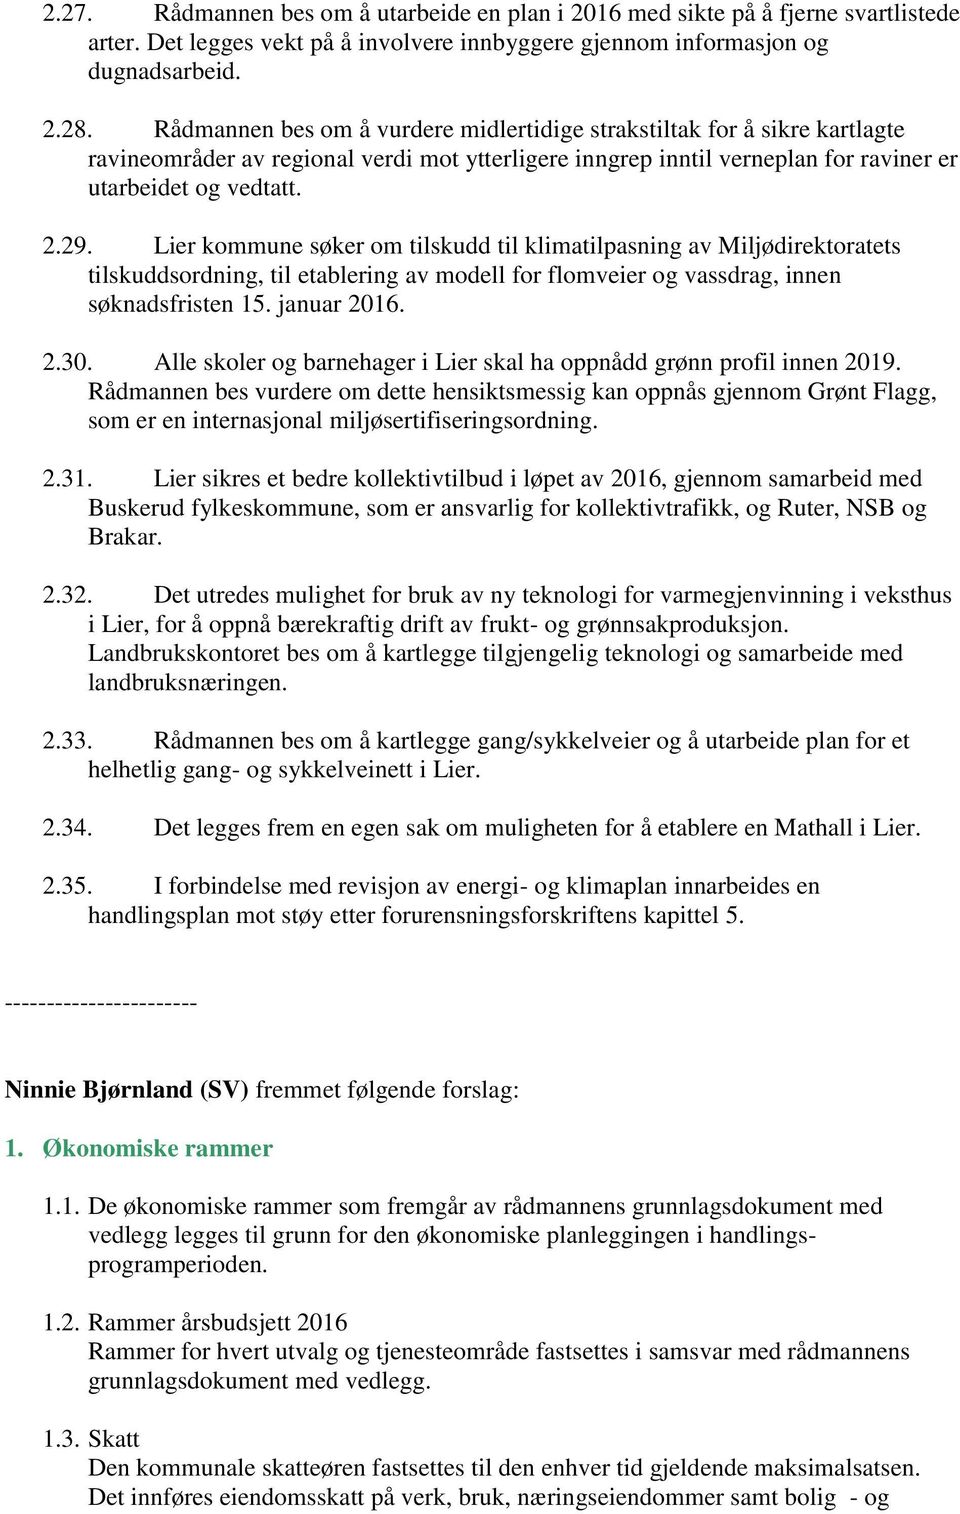 Lier kommune søker om tilskudd til klimatilpasning av Miljødirektoratets tilskuddsordning, til etablering av modell for flomveier og vassdrag, innen søknadsfristen 15. januar 2016. 2.30.